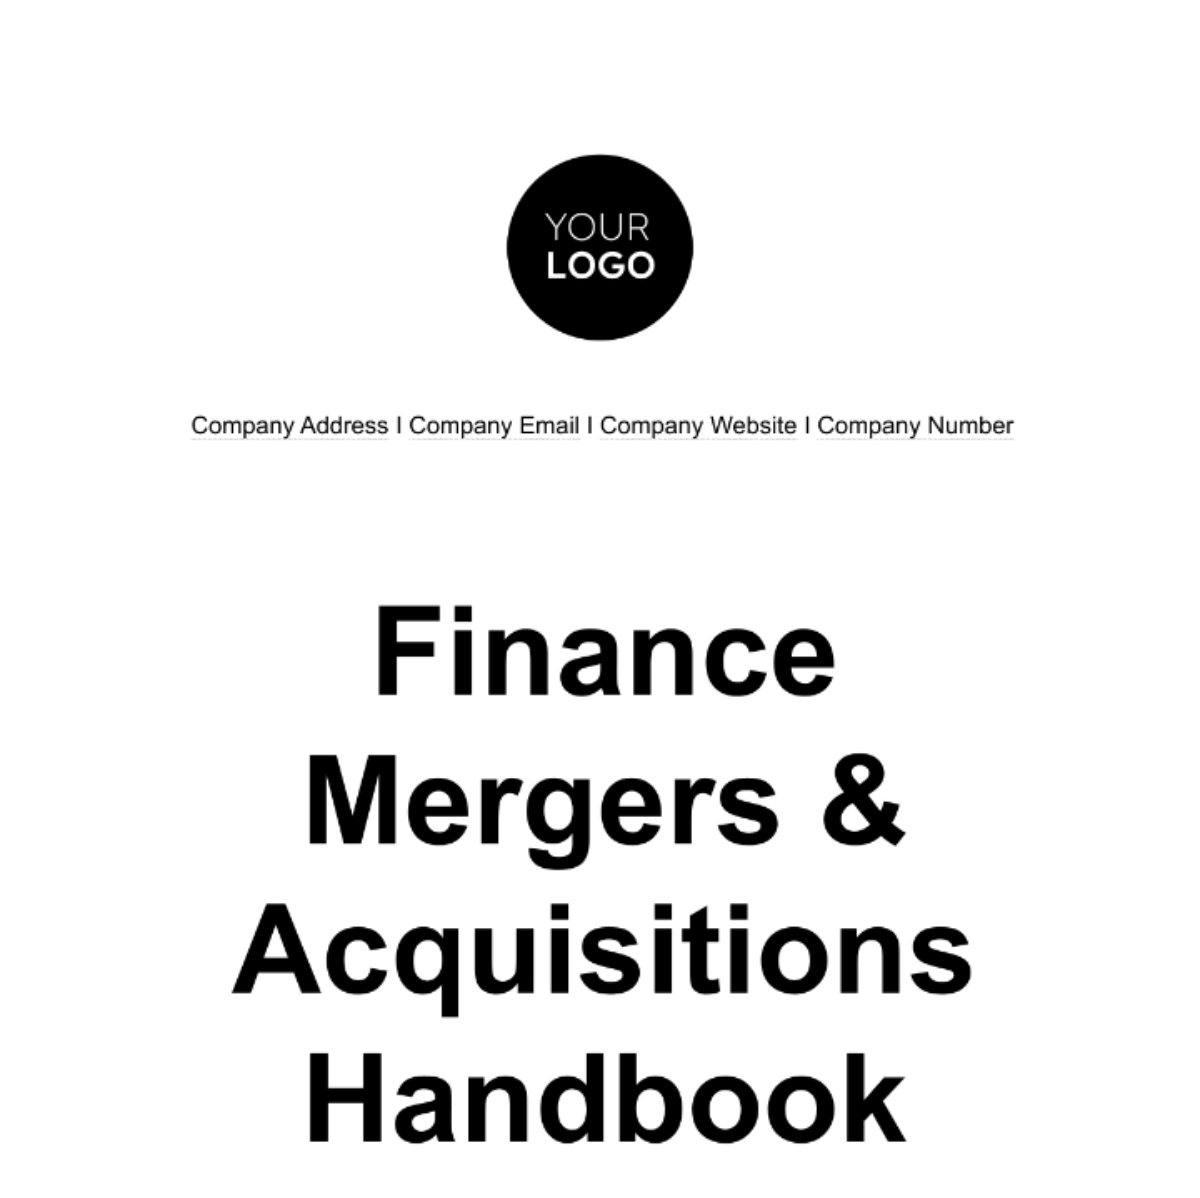 Finance Mergers & Acquisitions Handbook Template